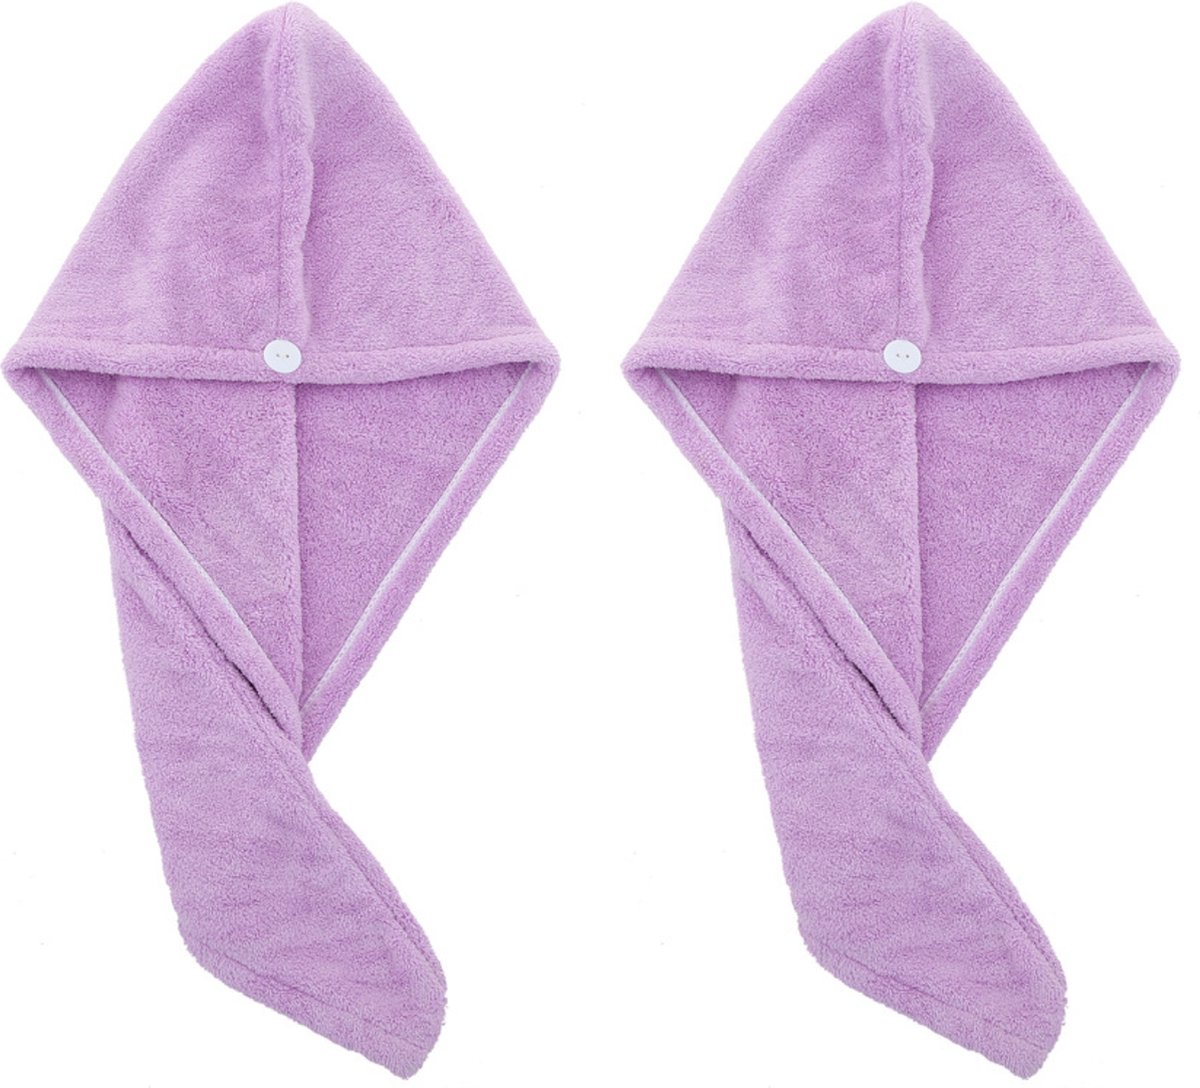 2x Haarhanddoek - Hoofdhanddoek - Hair towel - Sneldrogende handdoek - Haardroger - Haar handdoek - Paars